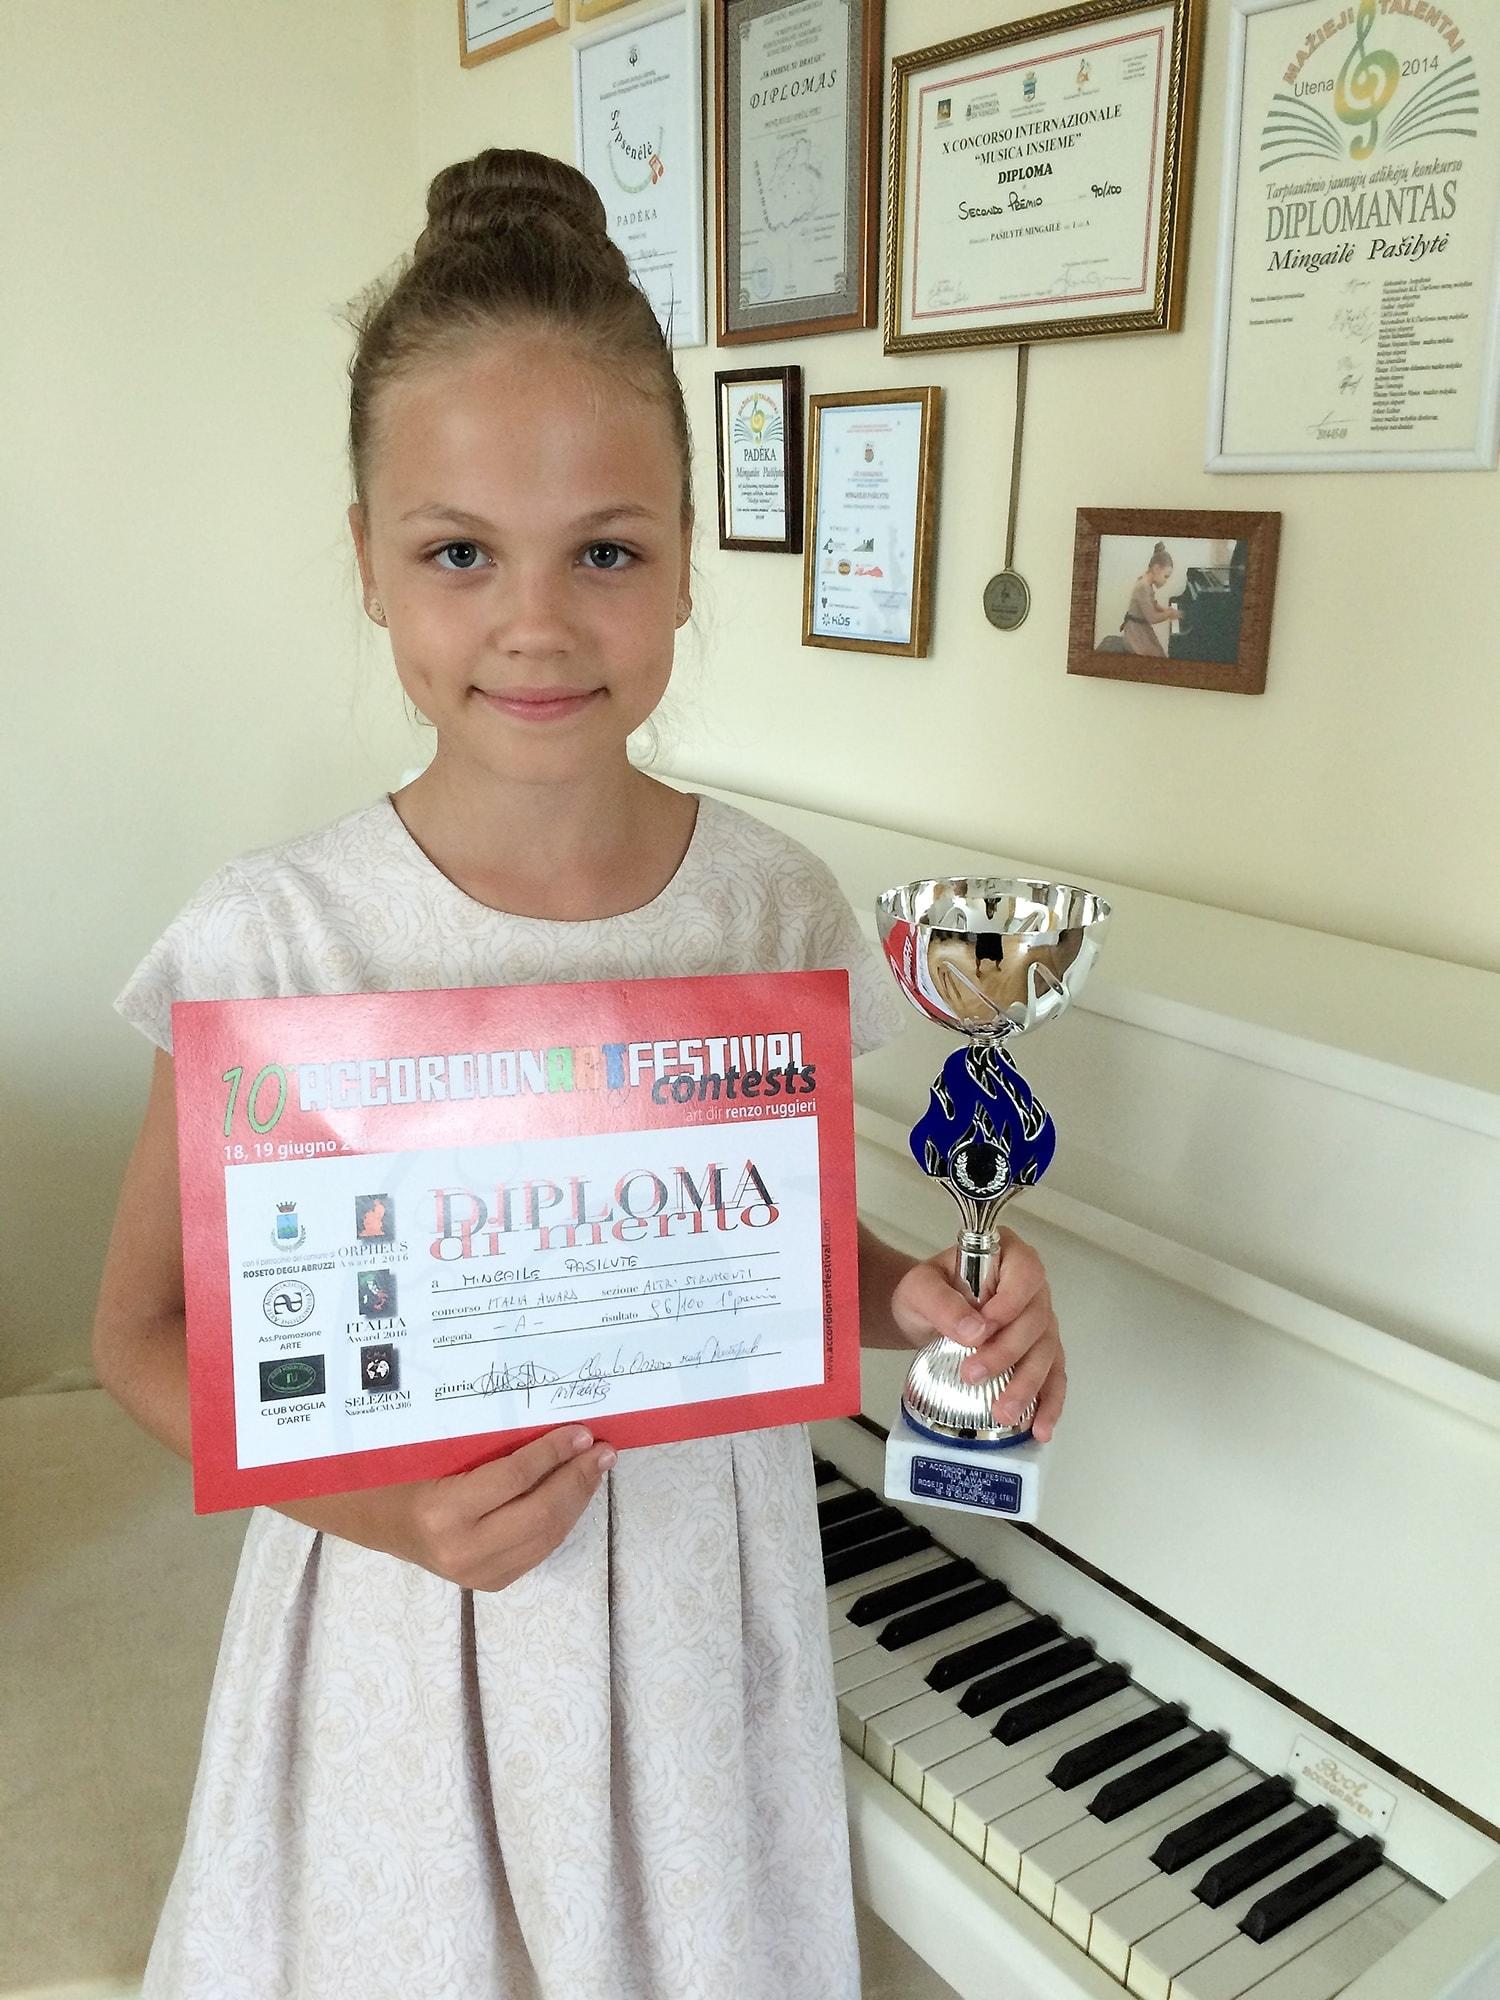 Sugrįžo su laimėjimais / Viena iš konkurso pirmos vietos laimėtojų – jaunoji pianistė Mingailė Pašilytė (mokytoja Rūta Driukienė). Asmeninio archyvo nuotr.